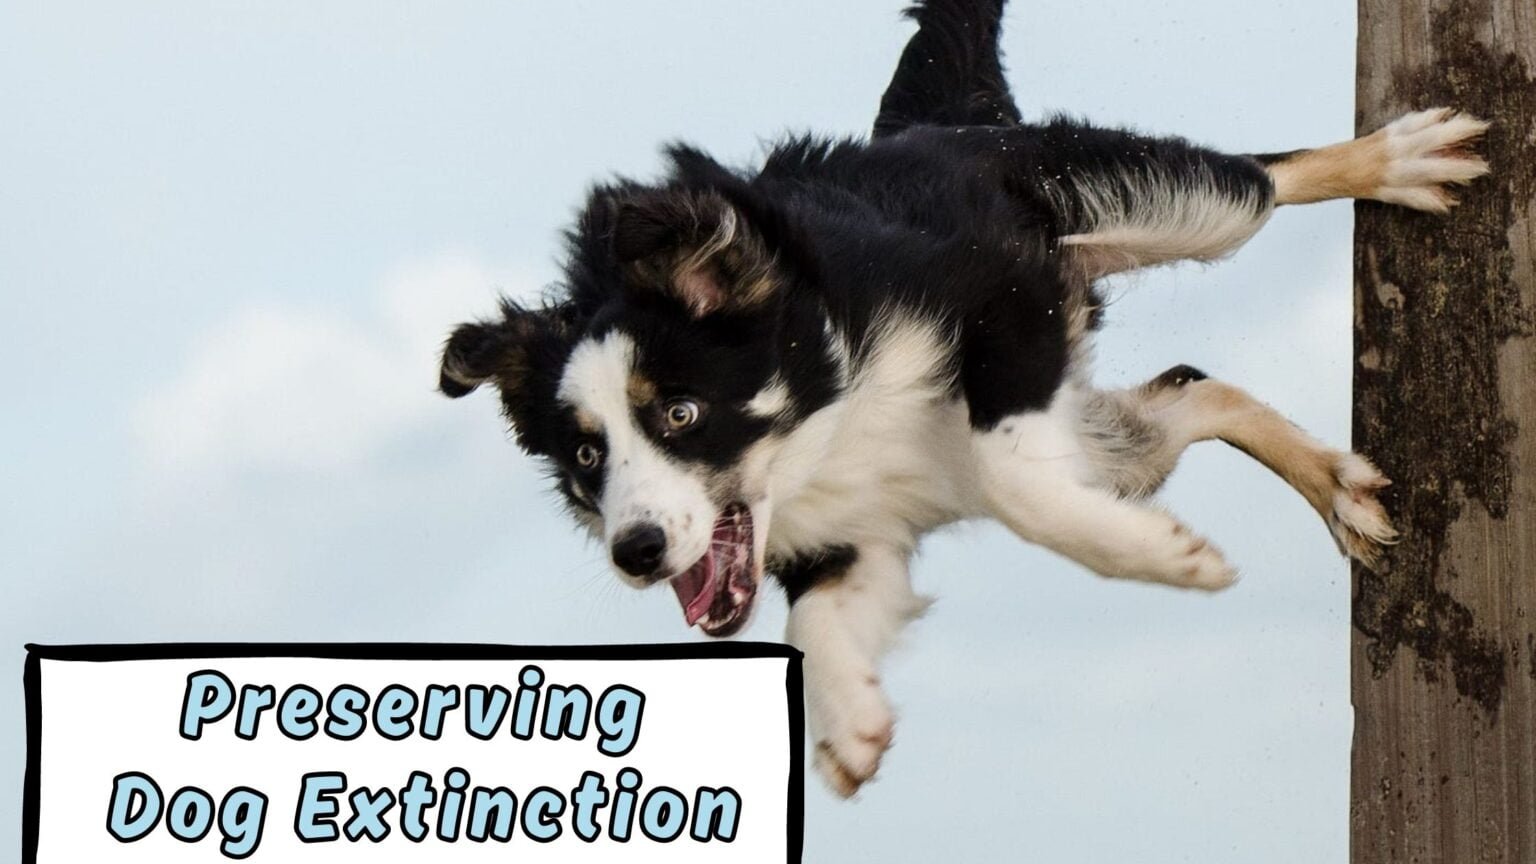 Preserving Dog Extinction